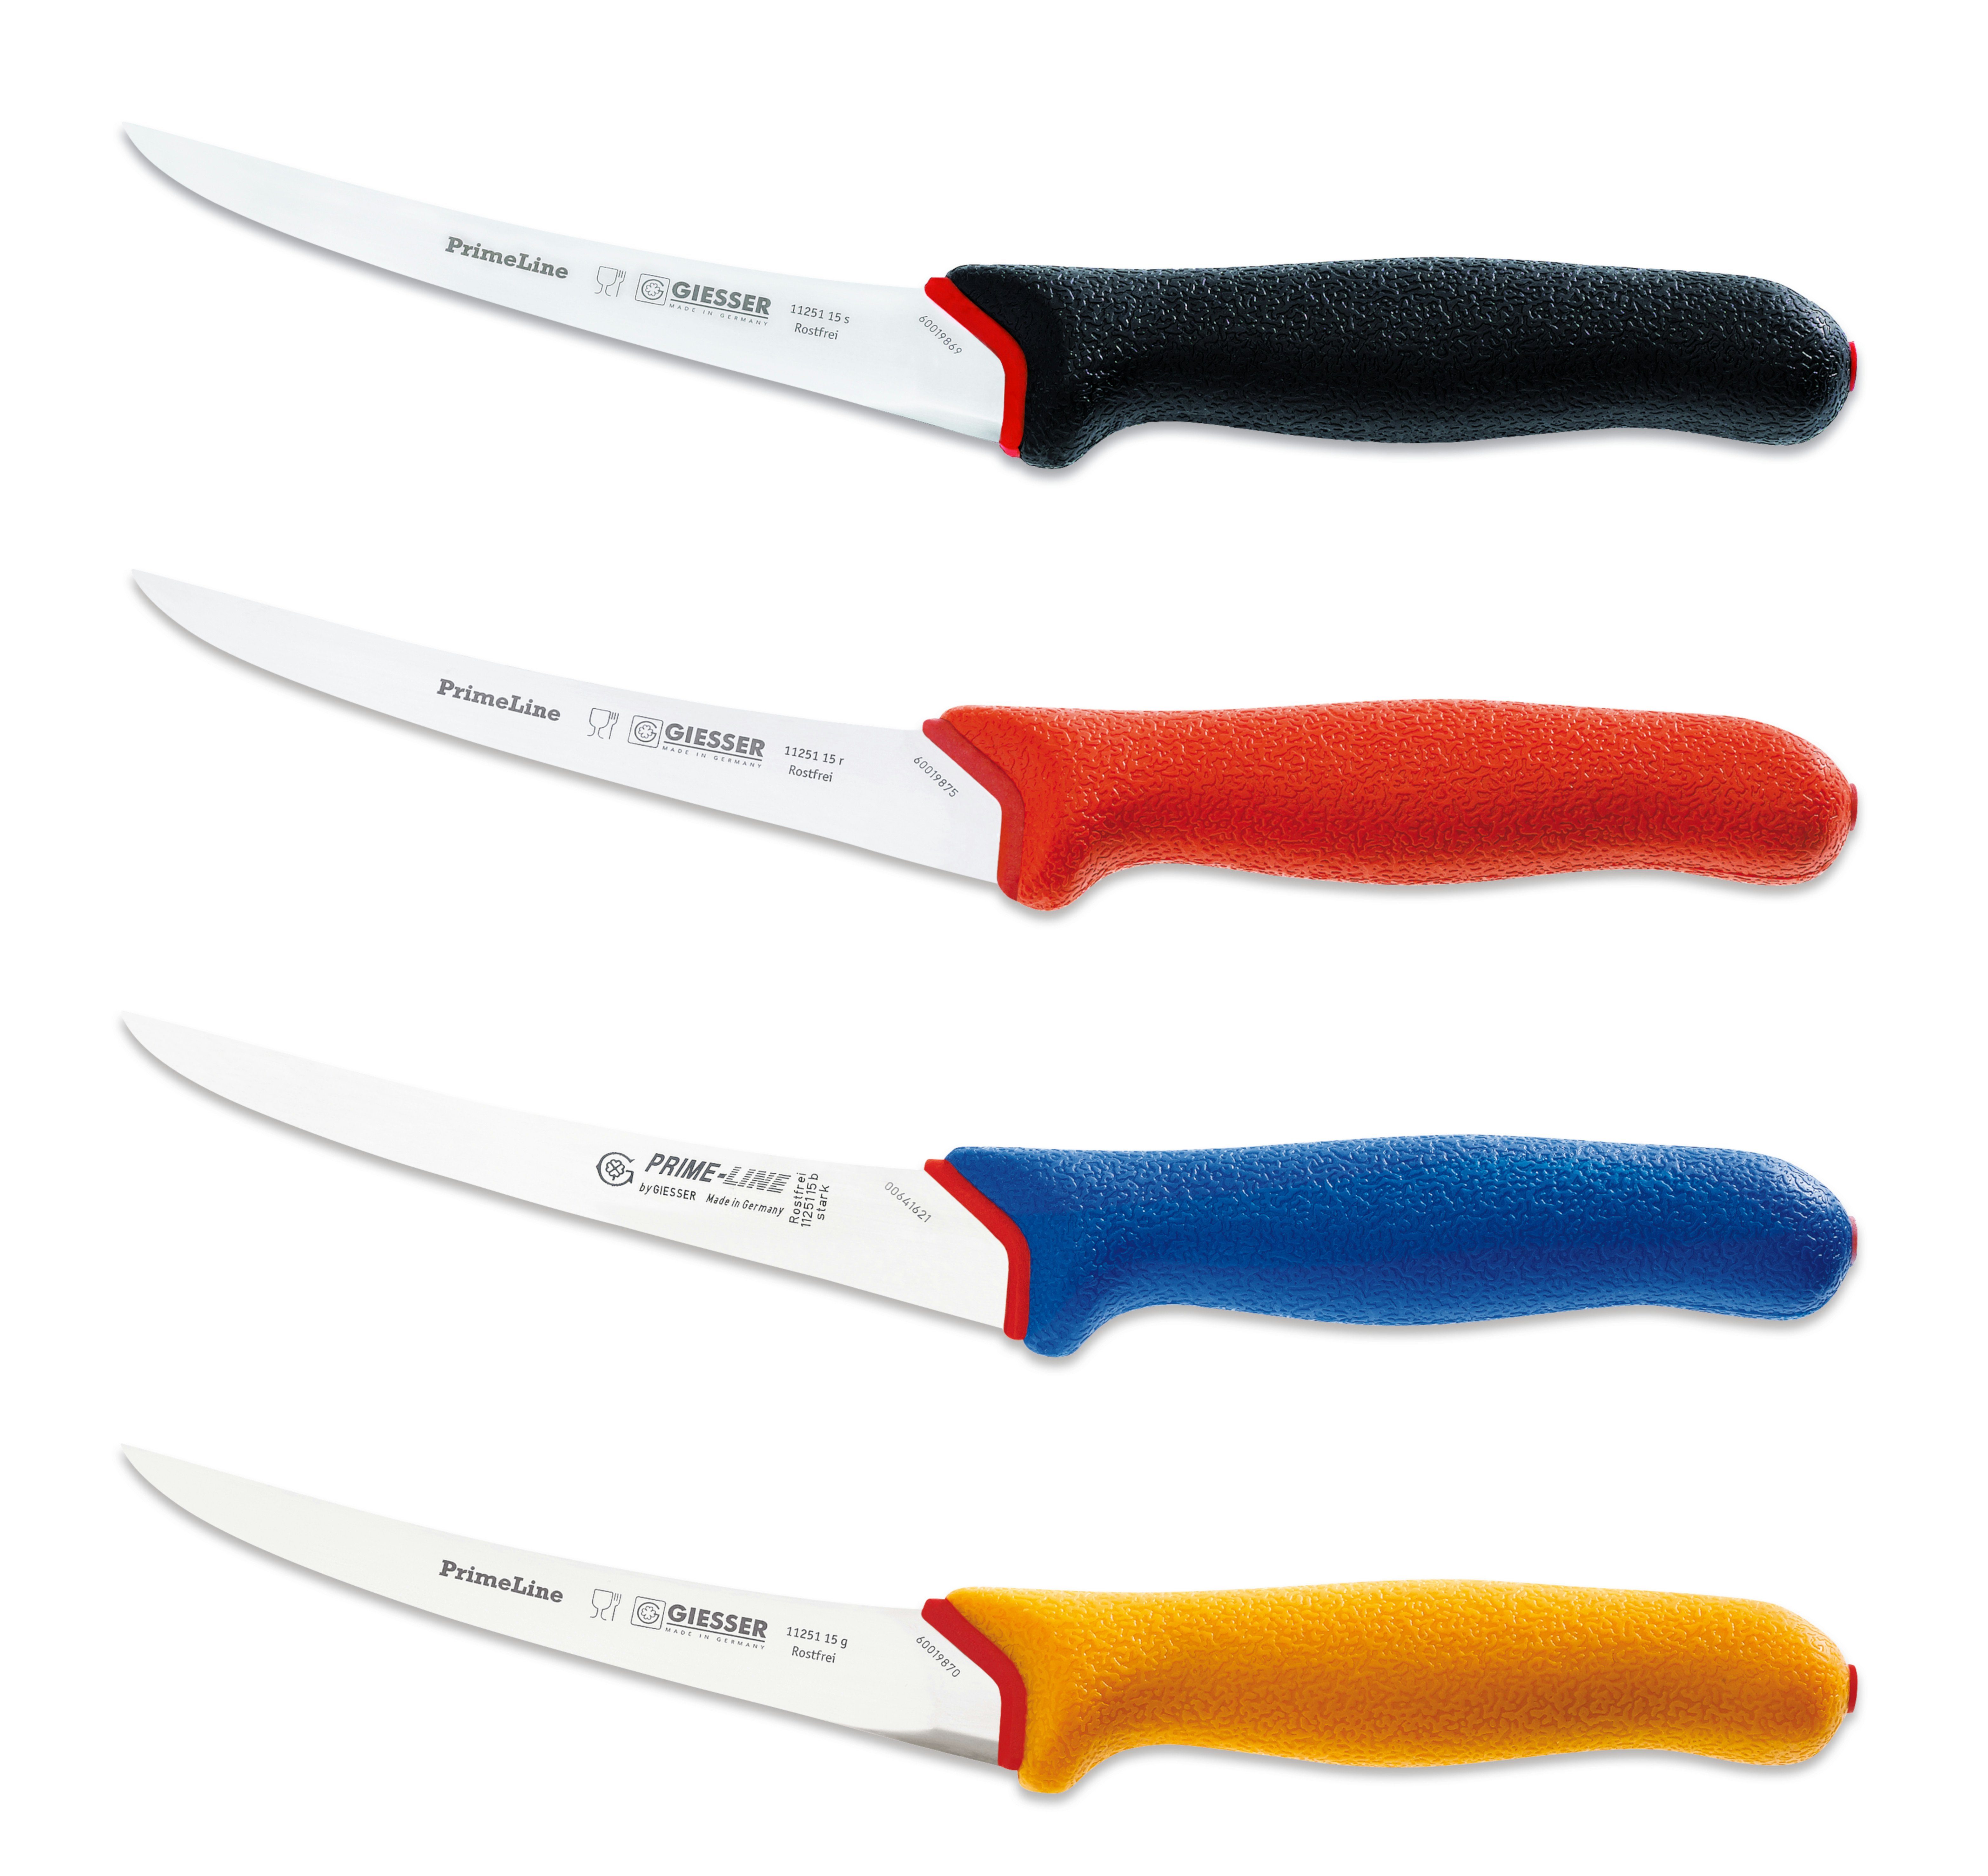 Messer Giesser blau Fleischermesser 11250 13/15, Griff PrimeLine, weicher Ausbeinmesser rutschfest,